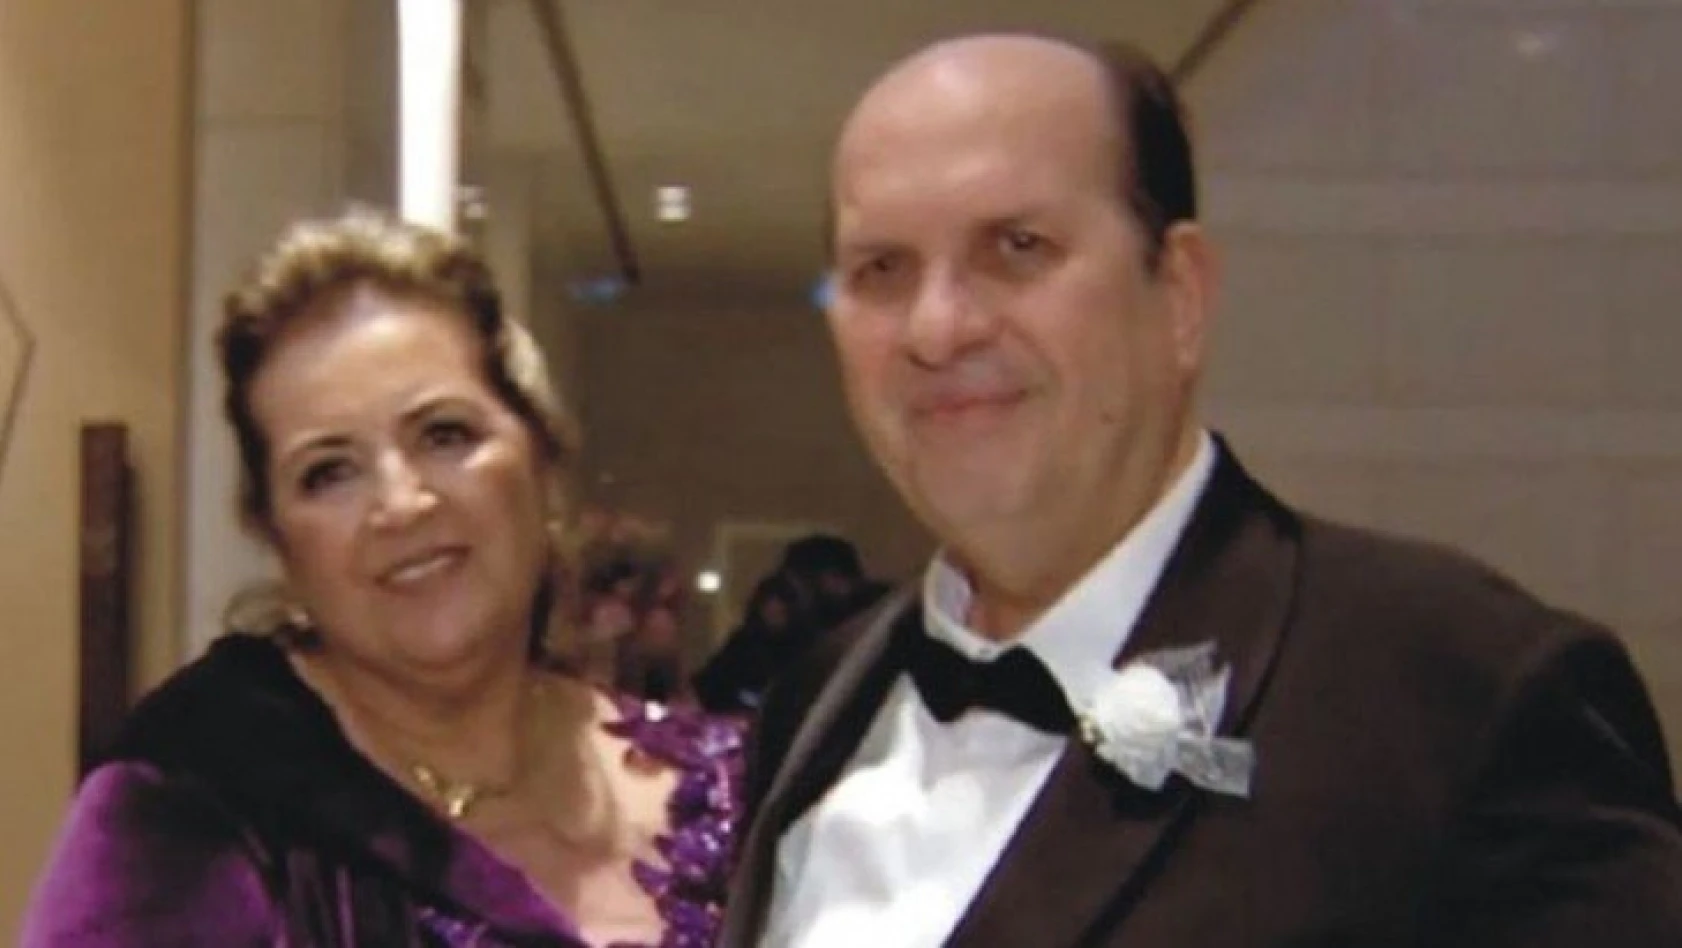 Ünlü kolonya markasının sahibi Özer Sezer Susesi hayatını kaybetti